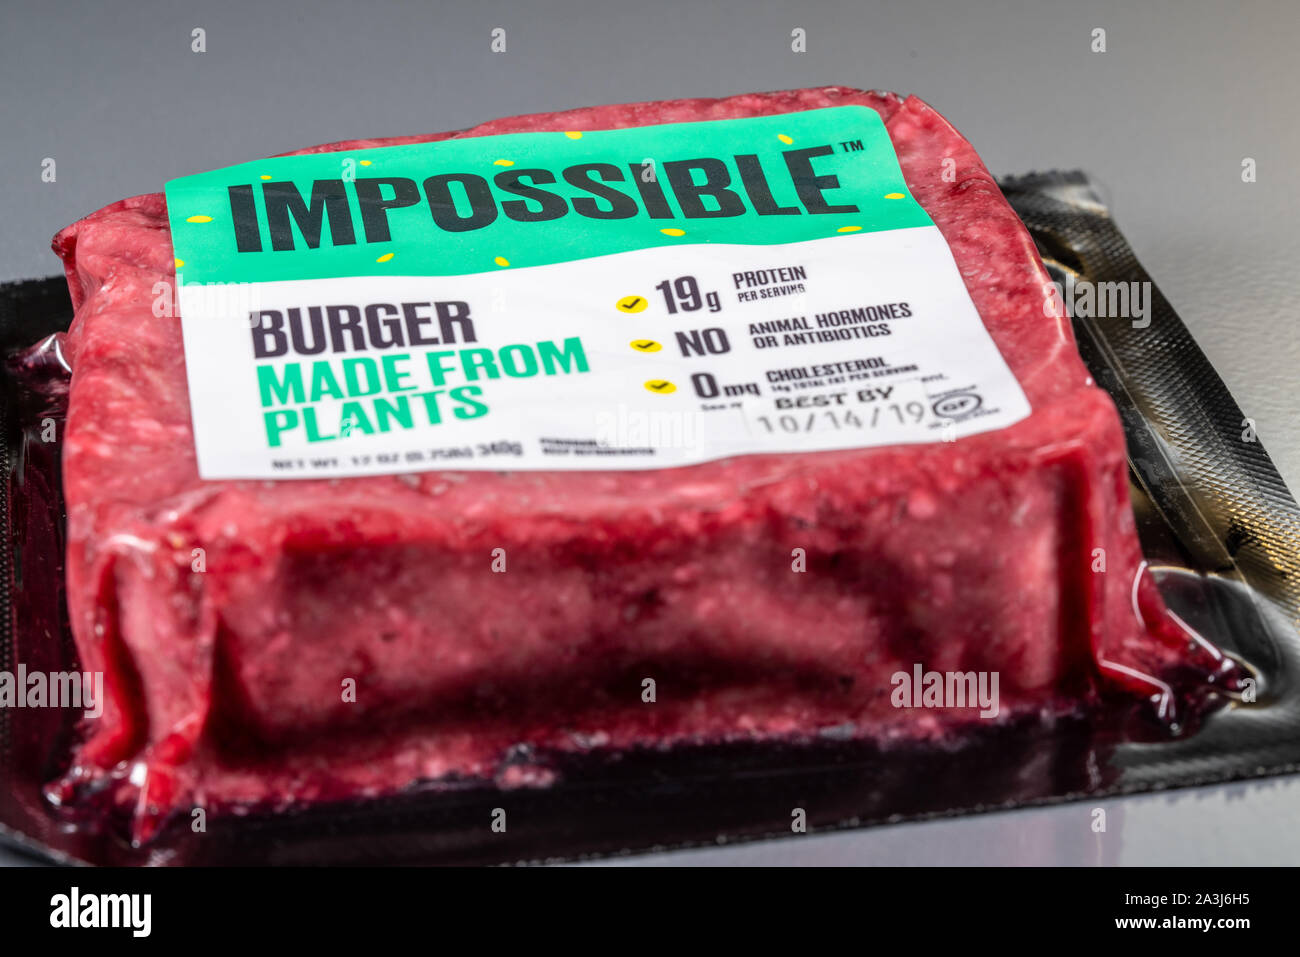 MORGANTOWN, WV - 8 octobre 2019 : l'emballage pour aliments Impossible burger fabriqués à partir de plantes sur fond d'acier Banque D'Images